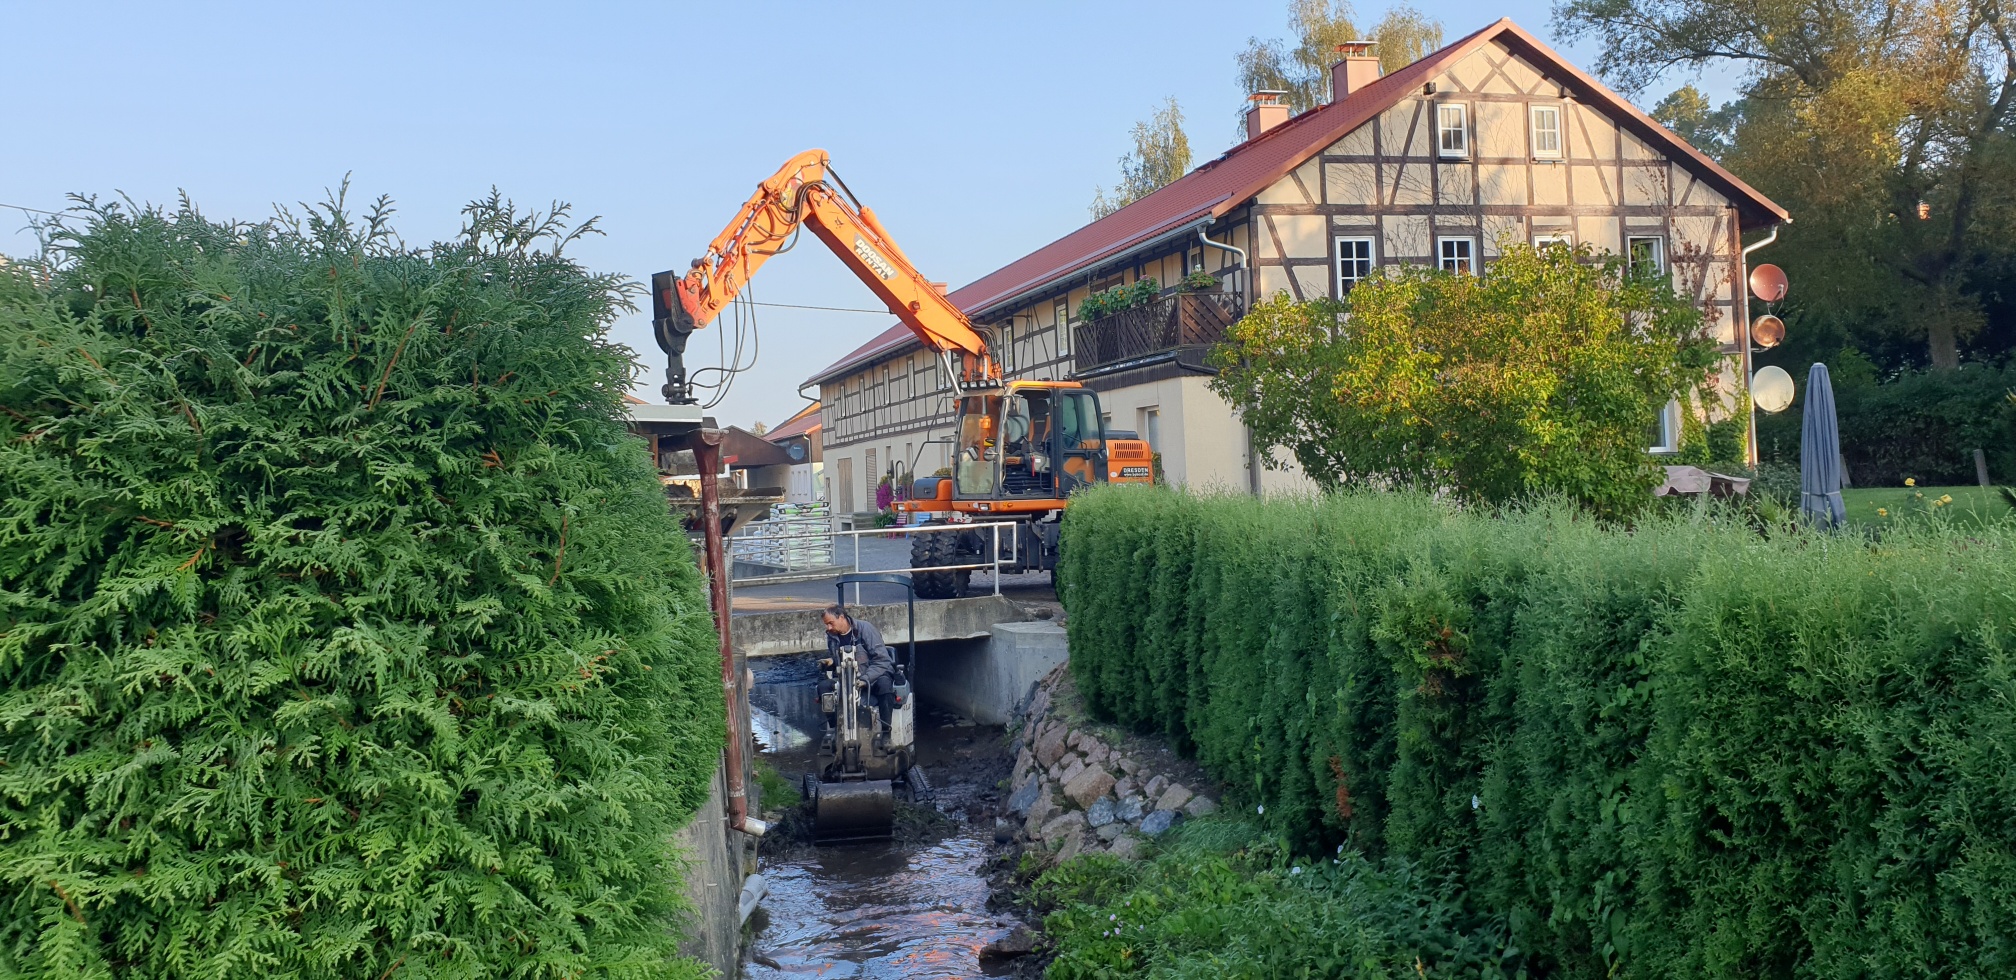 Sediementberäumung in Gewässern, in den Ortslagen der Gemeinde Klingenberg